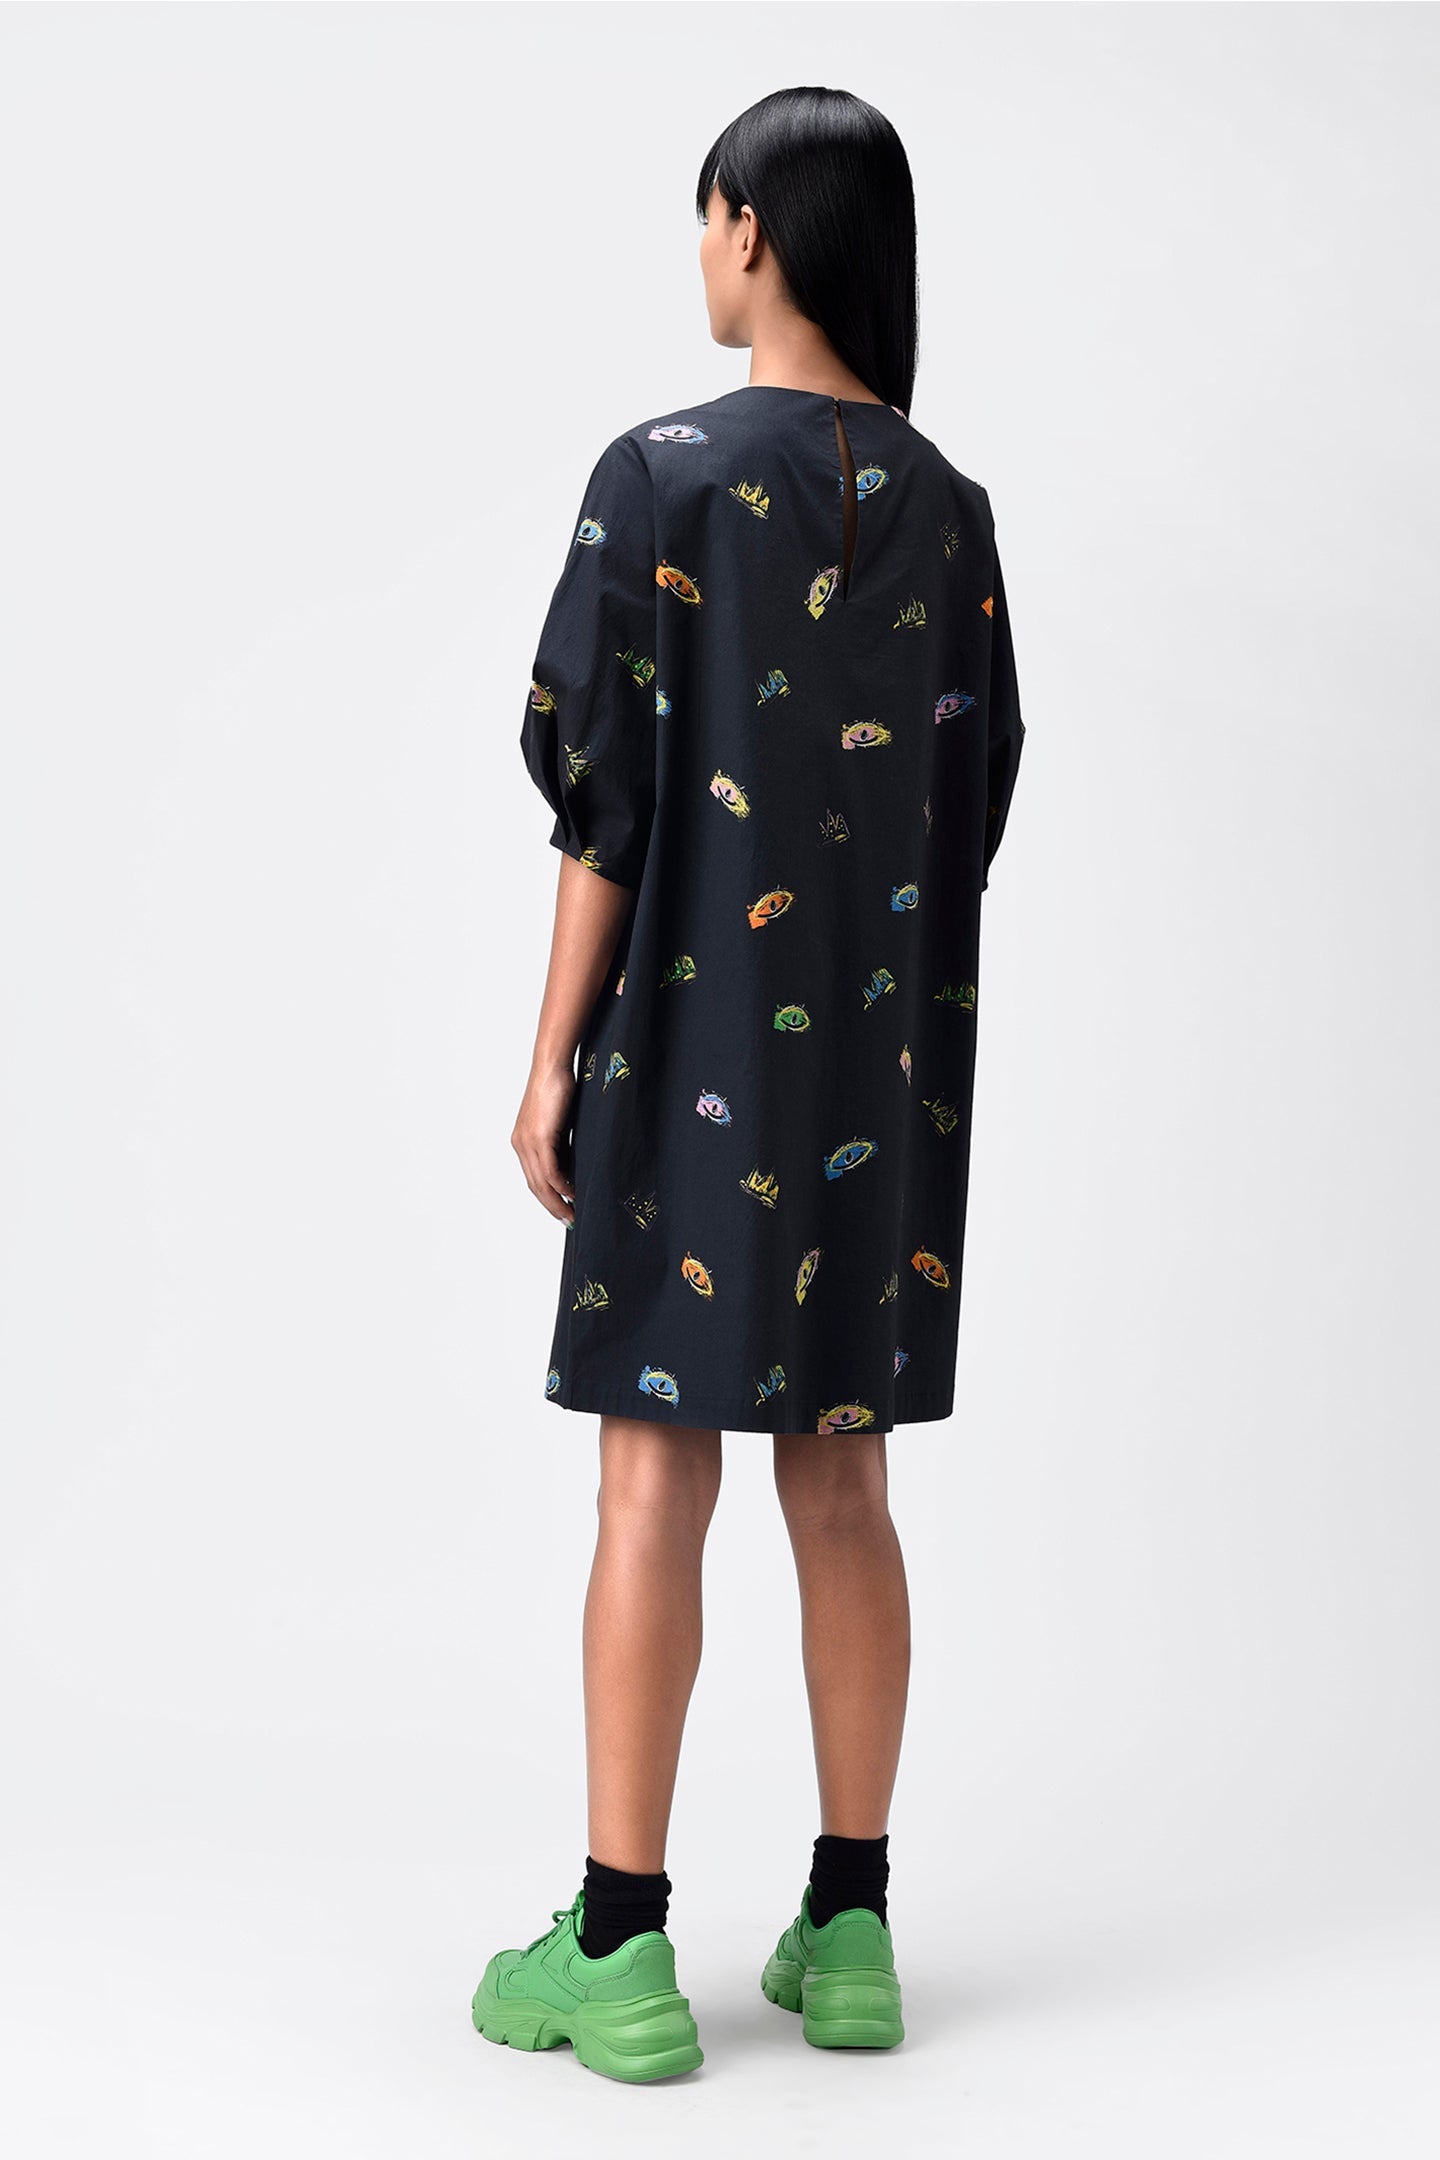 Printed Dress With Detachable Sling Bag